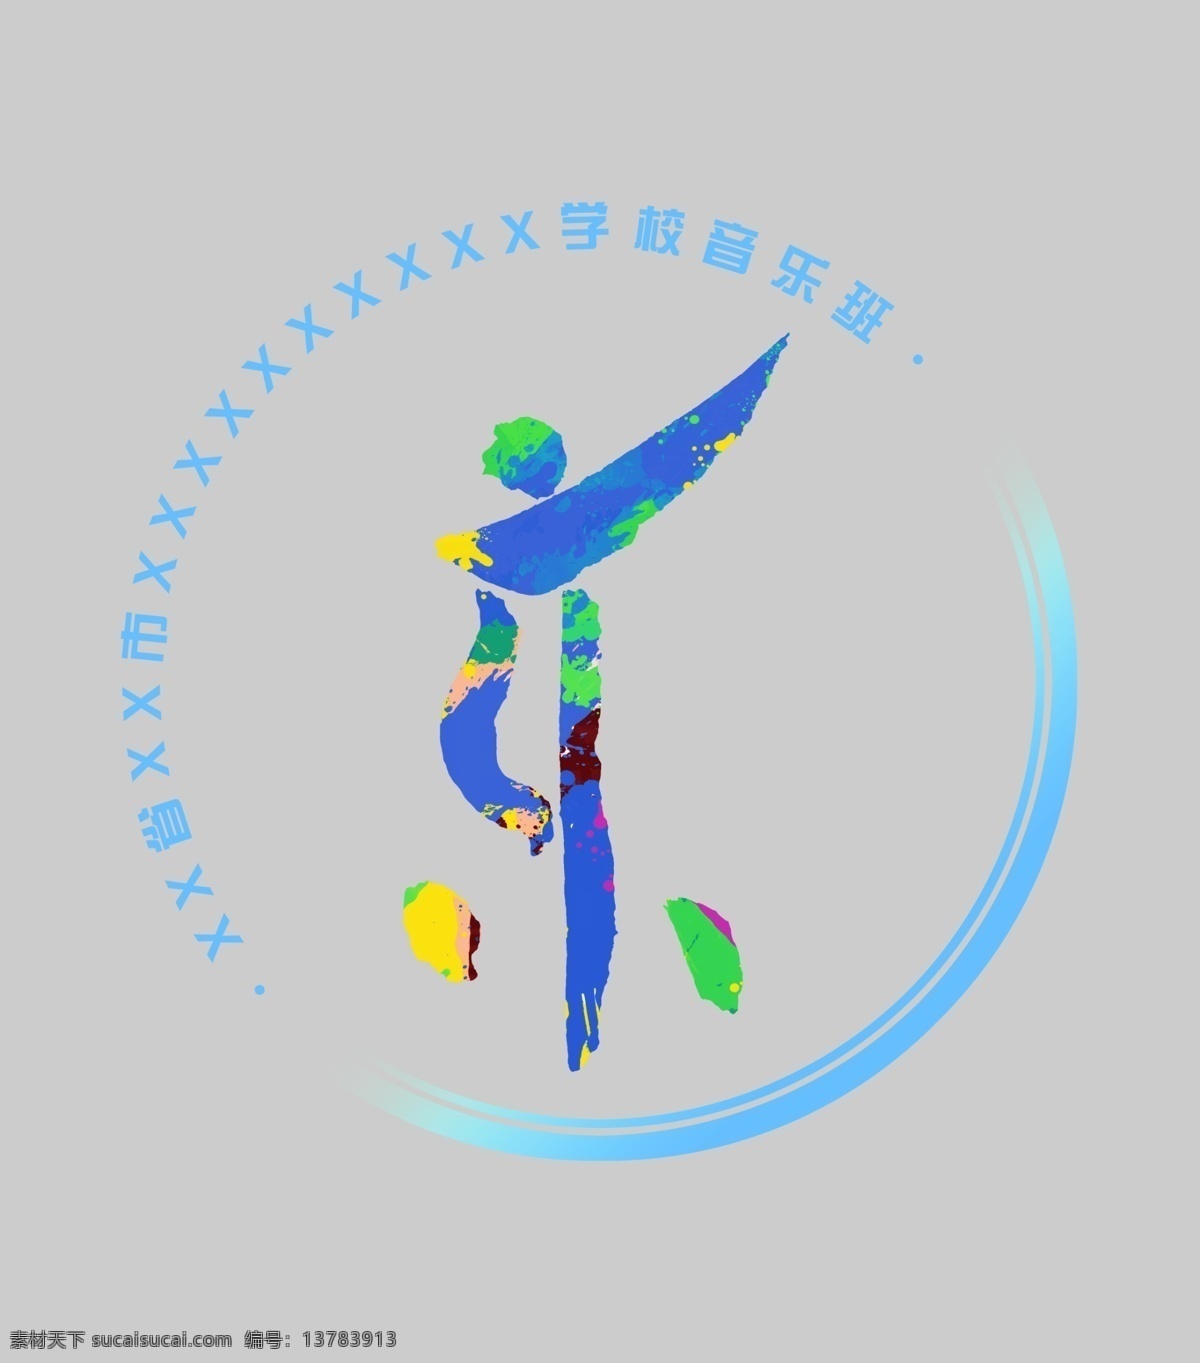 音乐 辅导班 logo 班 徽标 教育 文化艺术 标志图标 简约 企业 标志